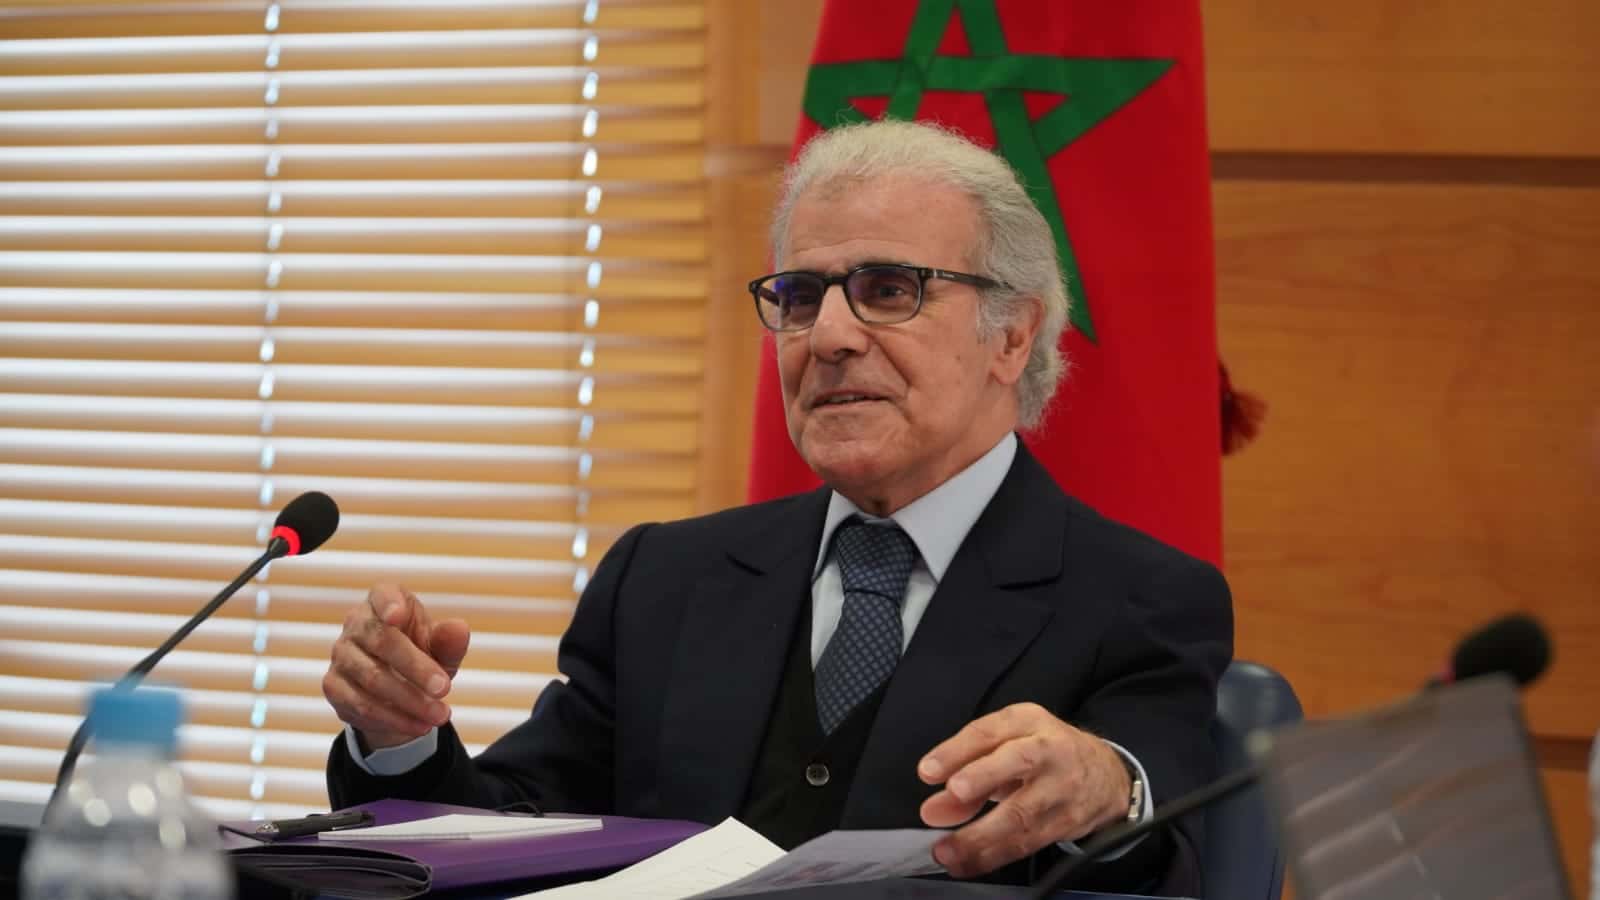 بنك المغرب يتوقع انتعاش الاقتصاد الوطني وتقهقر التضخم لأقل من 3 بالمئة